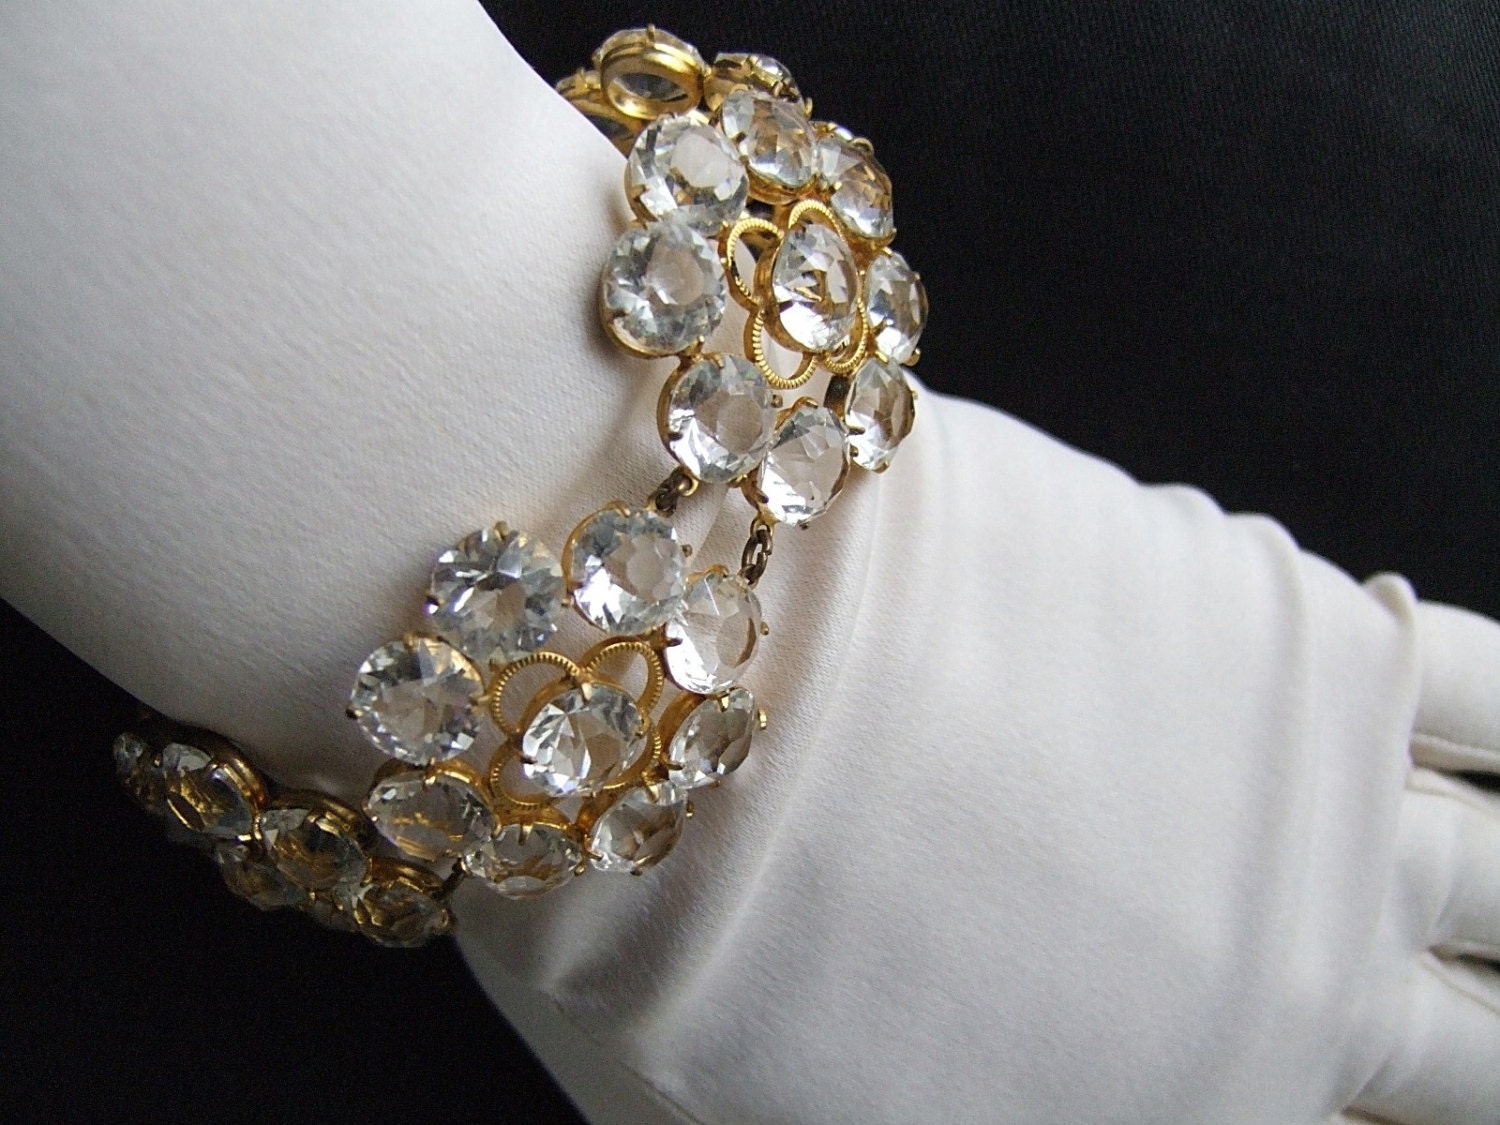 Old Hollywood Crystal Bracelet Vintage 40's Crystal Flower Bracelet Sparkling Clear Open Back Prong Set Crystals 1" Flowers Statement Piece - materialmemorieslane